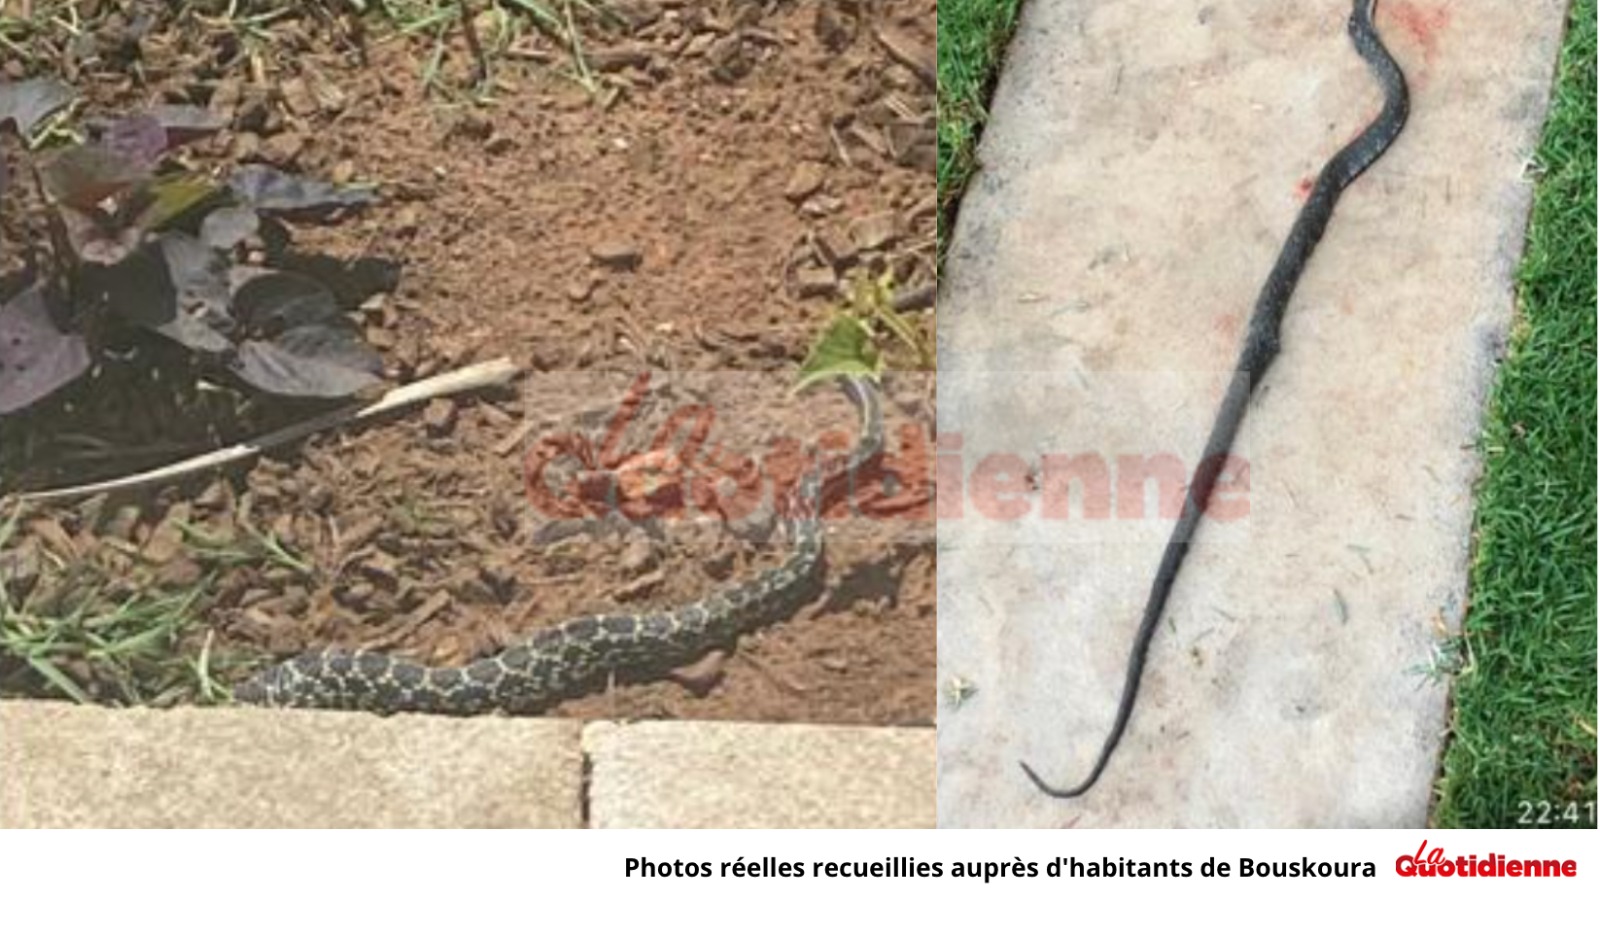 Invasion de serpents à Bouskoura : Le cri désespéré d’une citoyenne